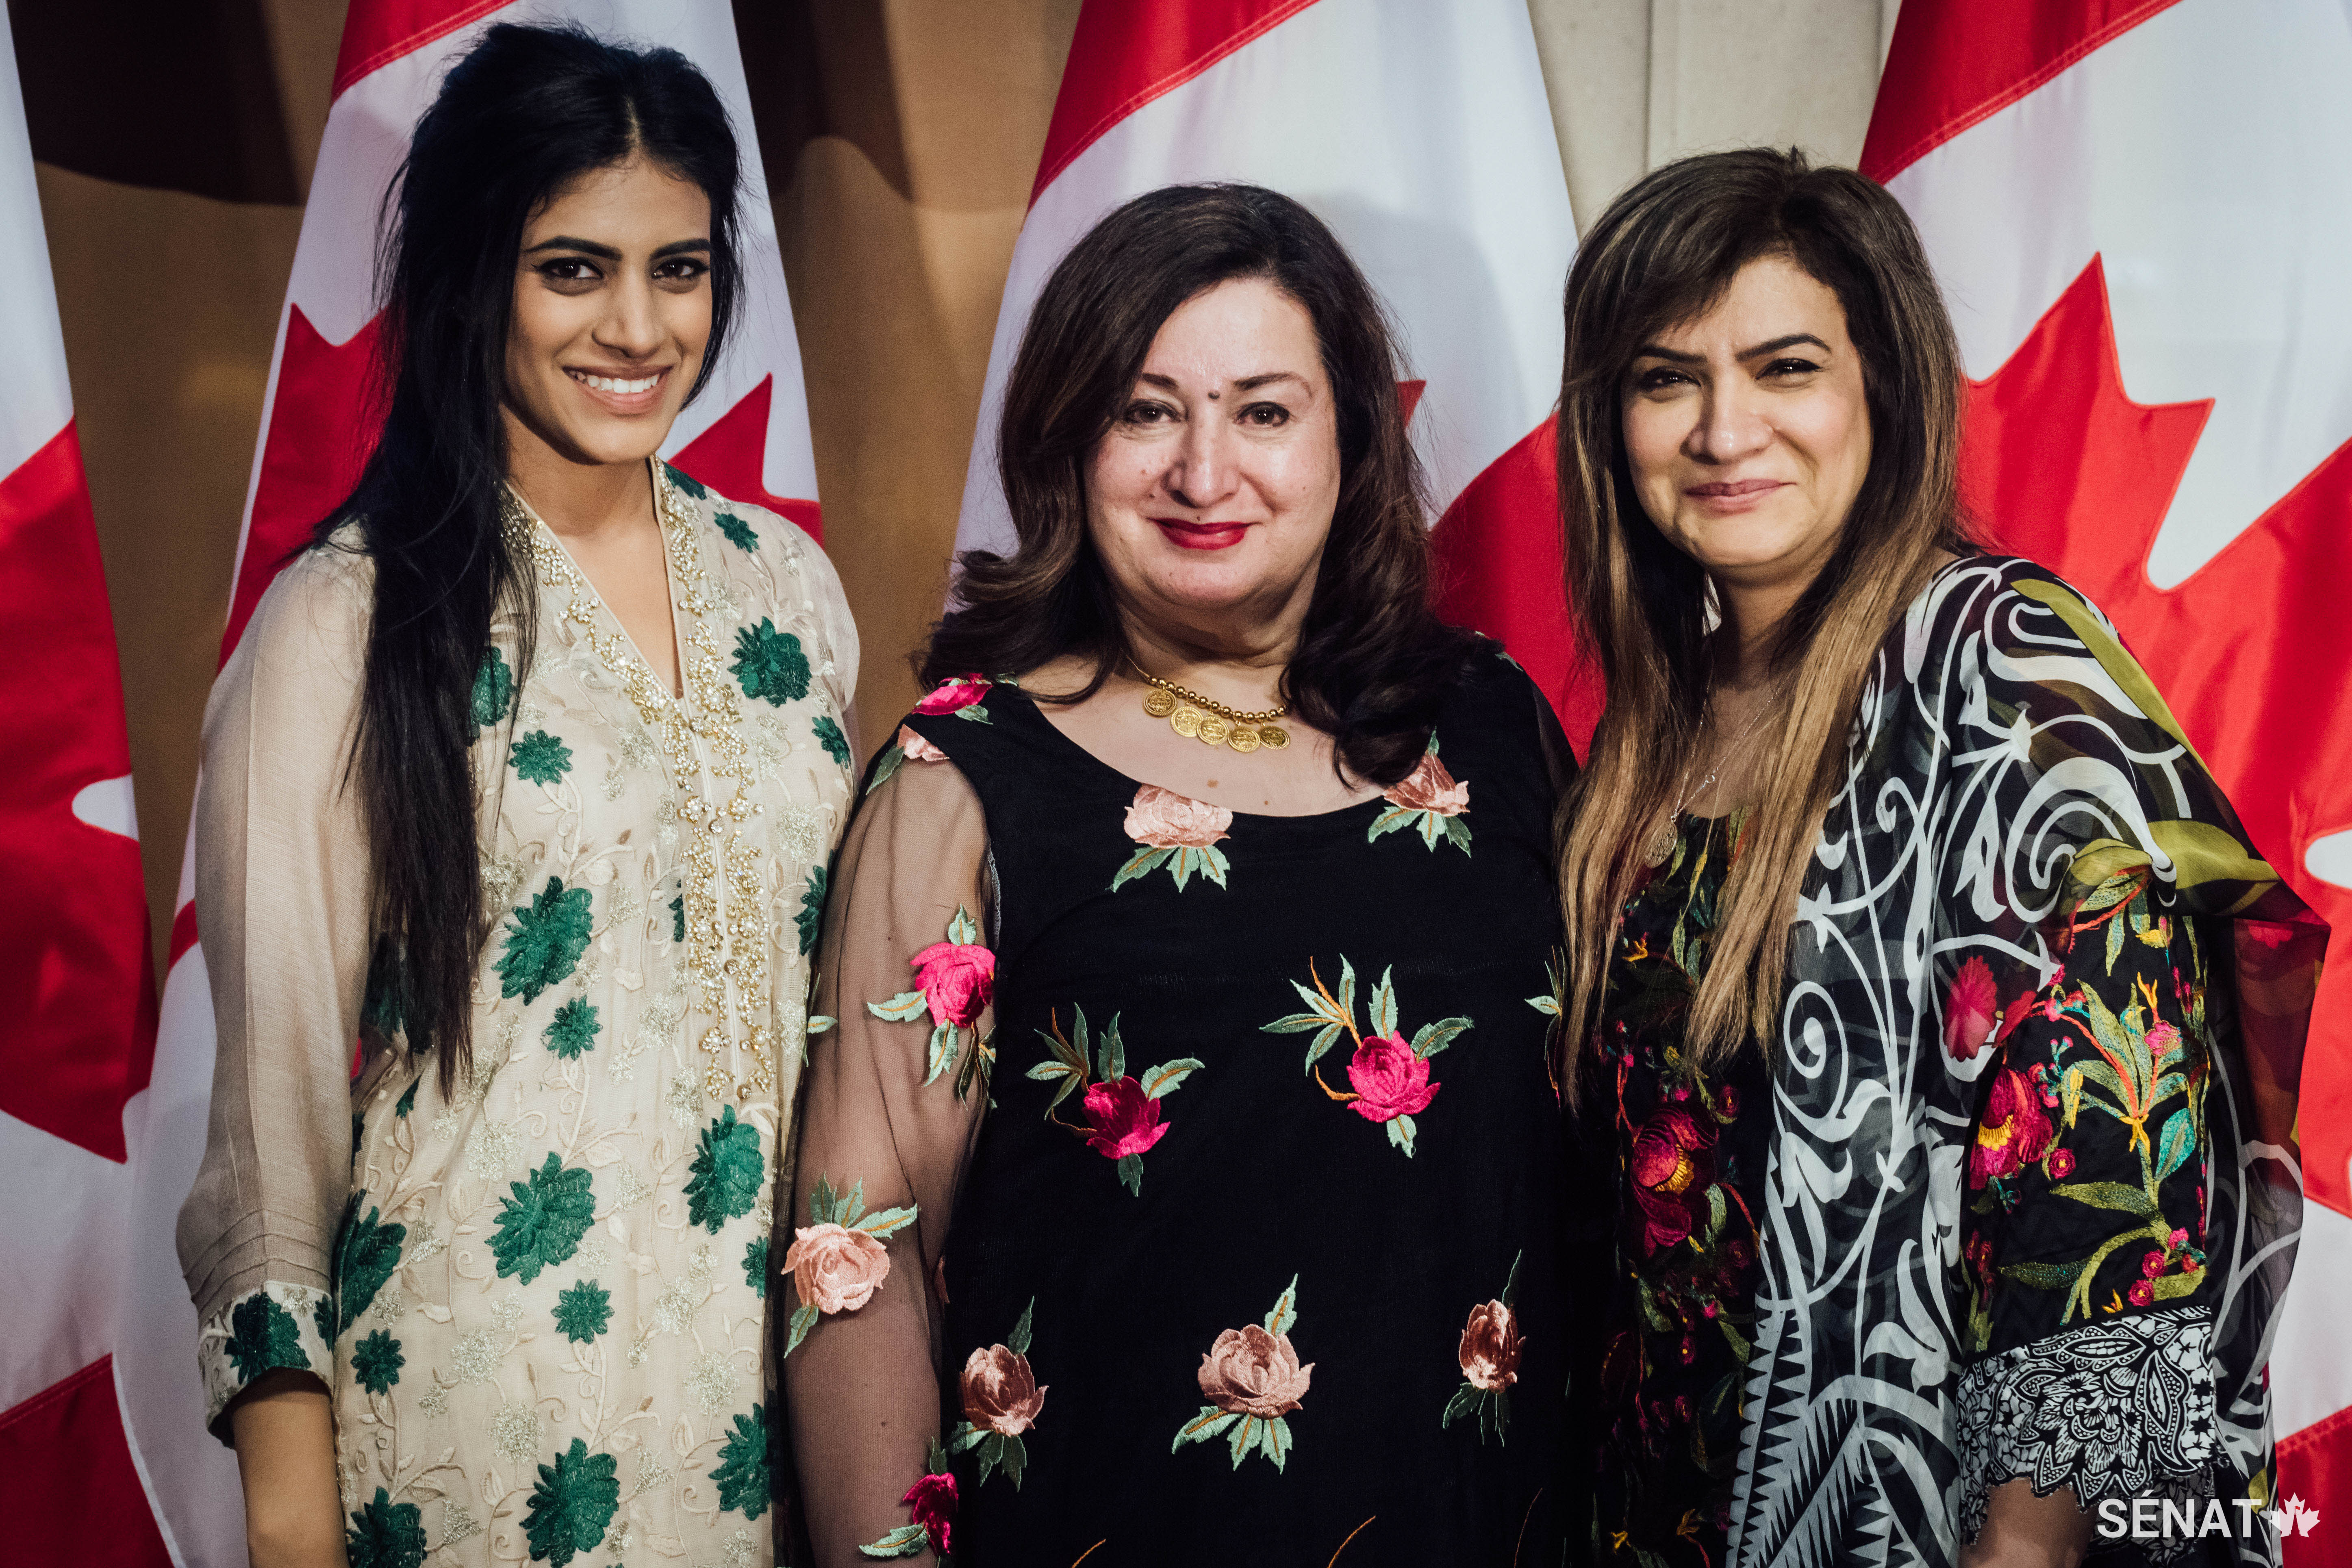 La sénatrice Salma Ataullahjan (au centre) pose avec Samah Syed (à gauche) et Mashooda Lubna Syed (à droite). La sénatrice Ataullahjan est la première sénatrice d’origine pakistanaise de l’histoire du Canada.